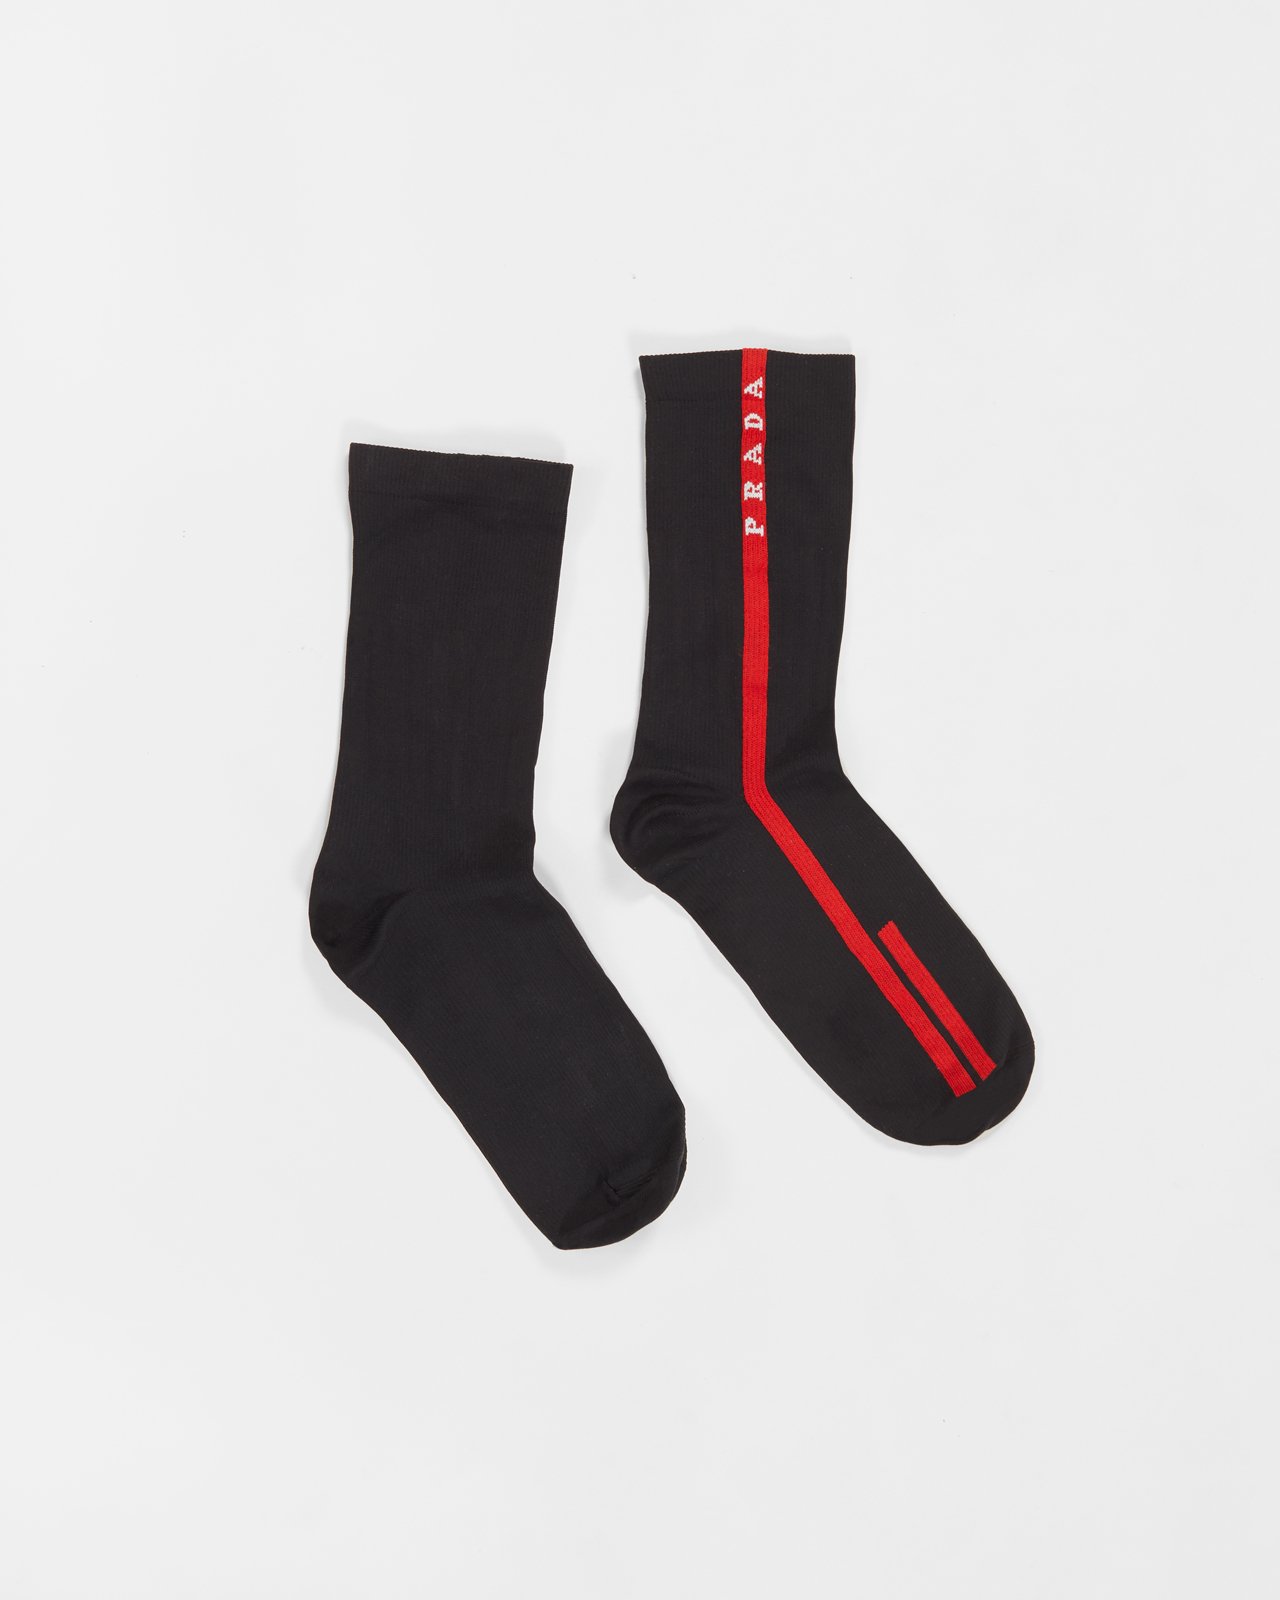 Prada - Men's Logo Stripe Socks Black - Accessories - Black - Image 1